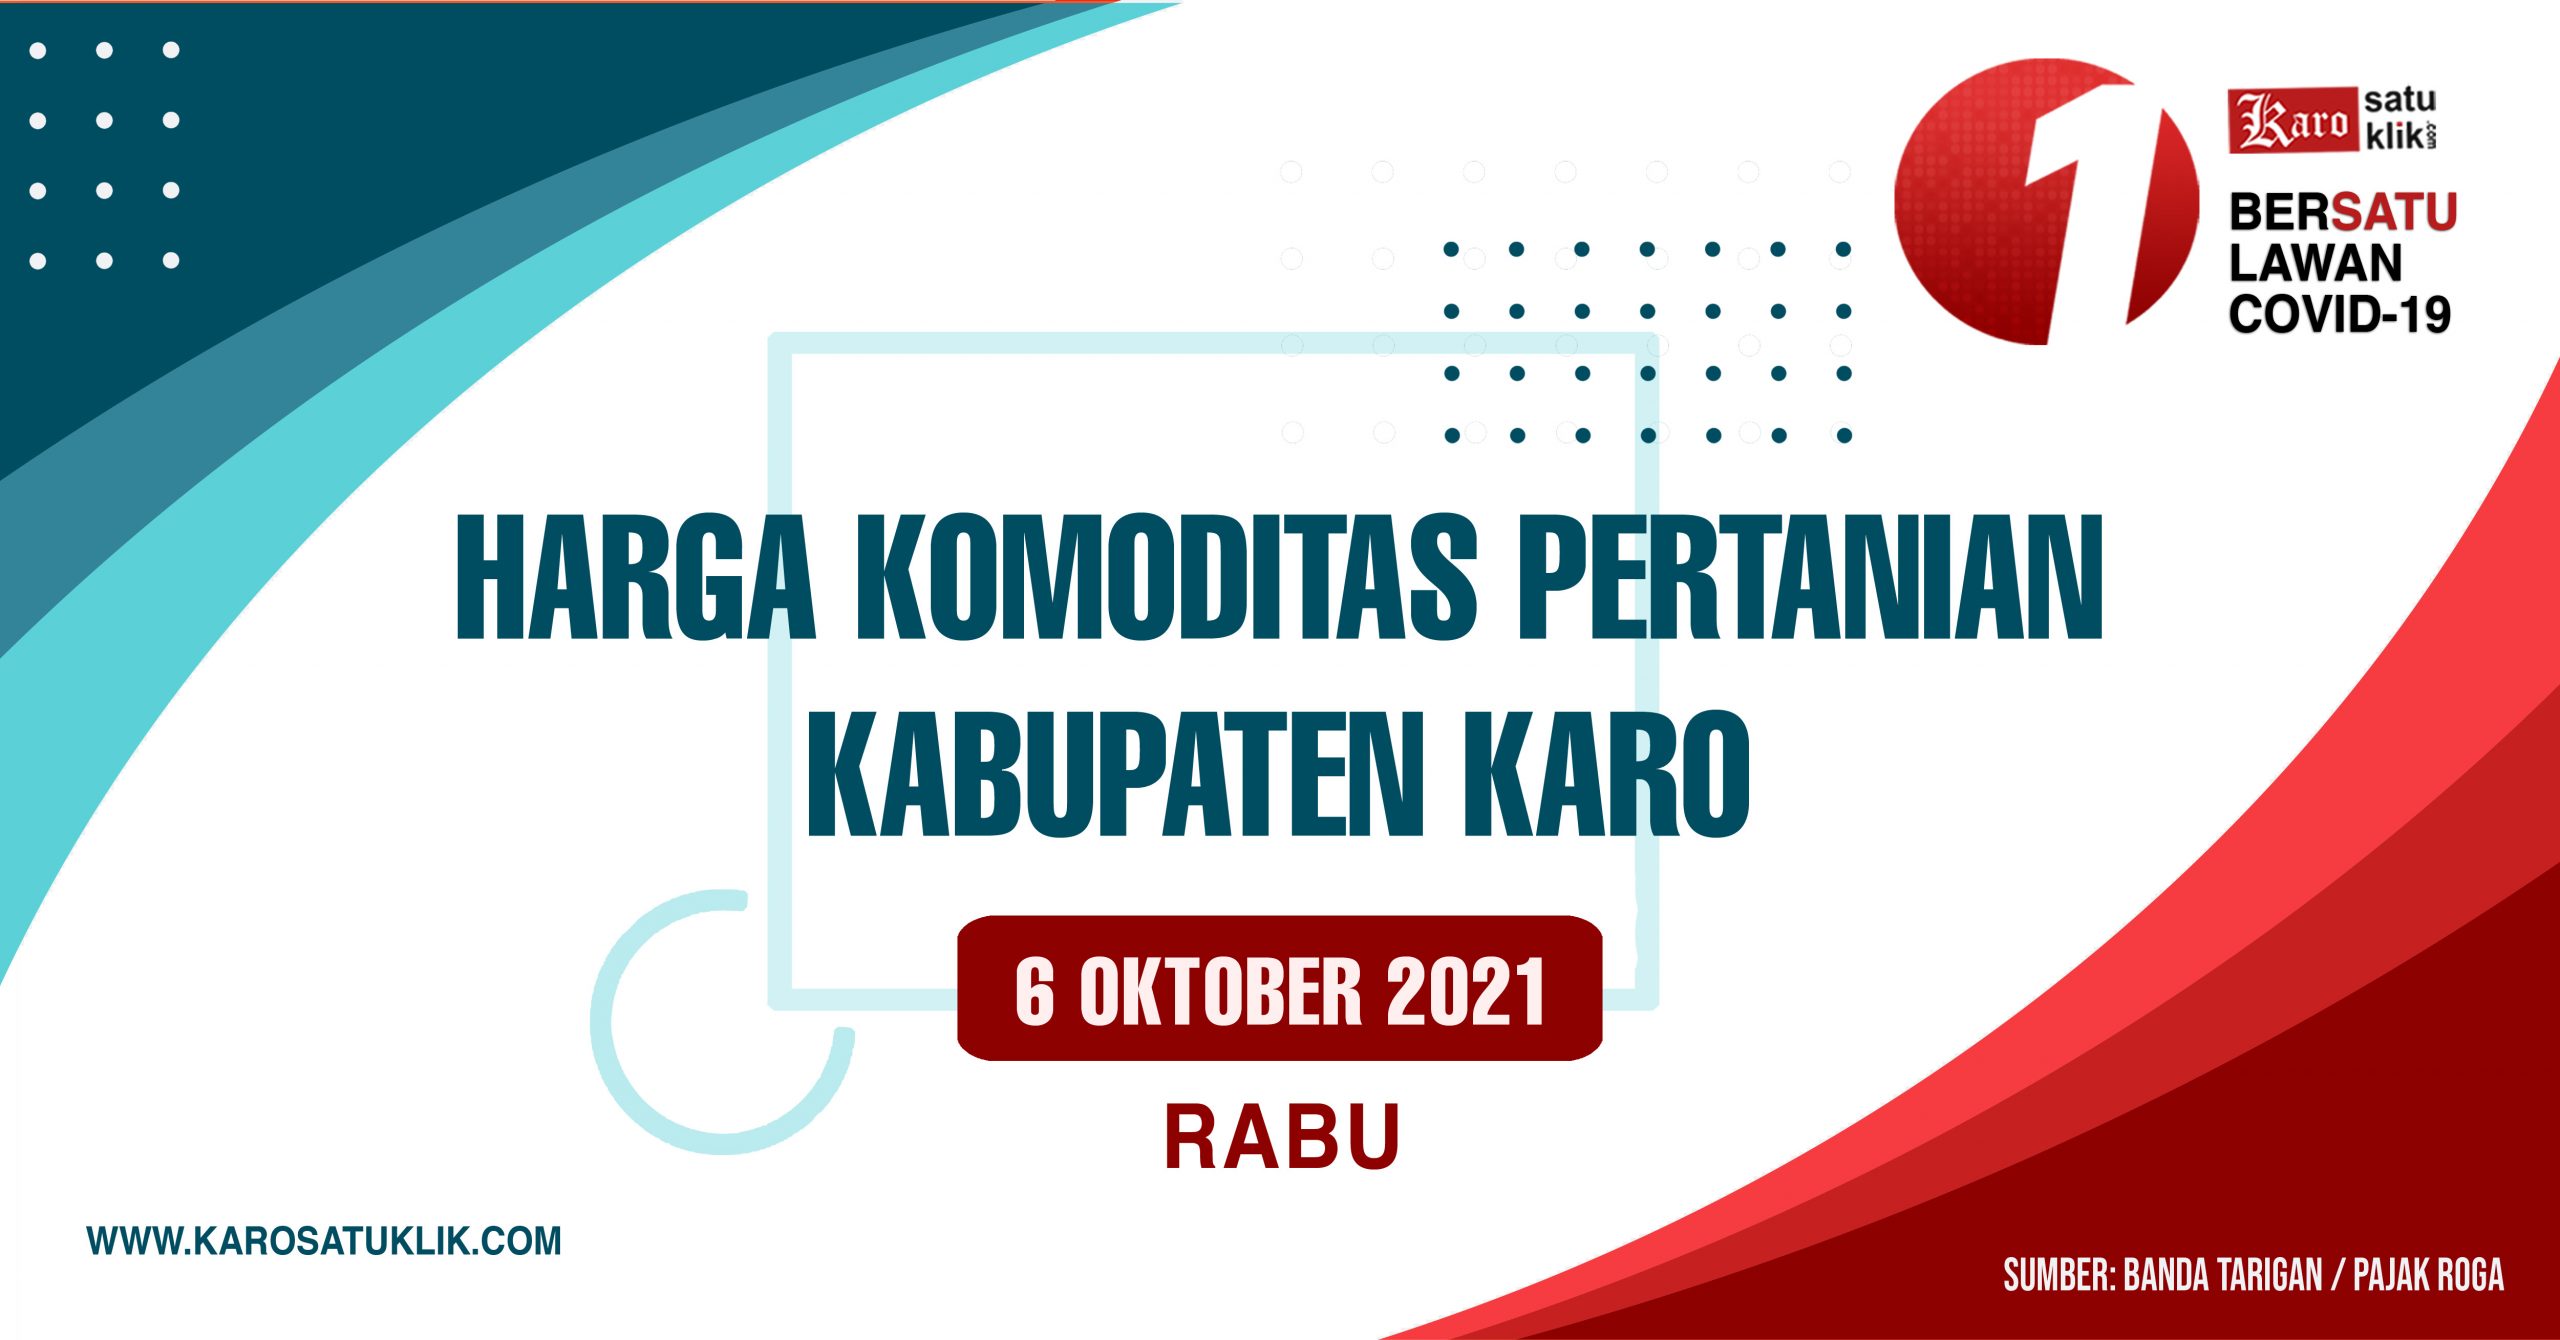 Daftar Harga Komoditas Pertanian Kabupaten Karo, 6 Oktober 2021